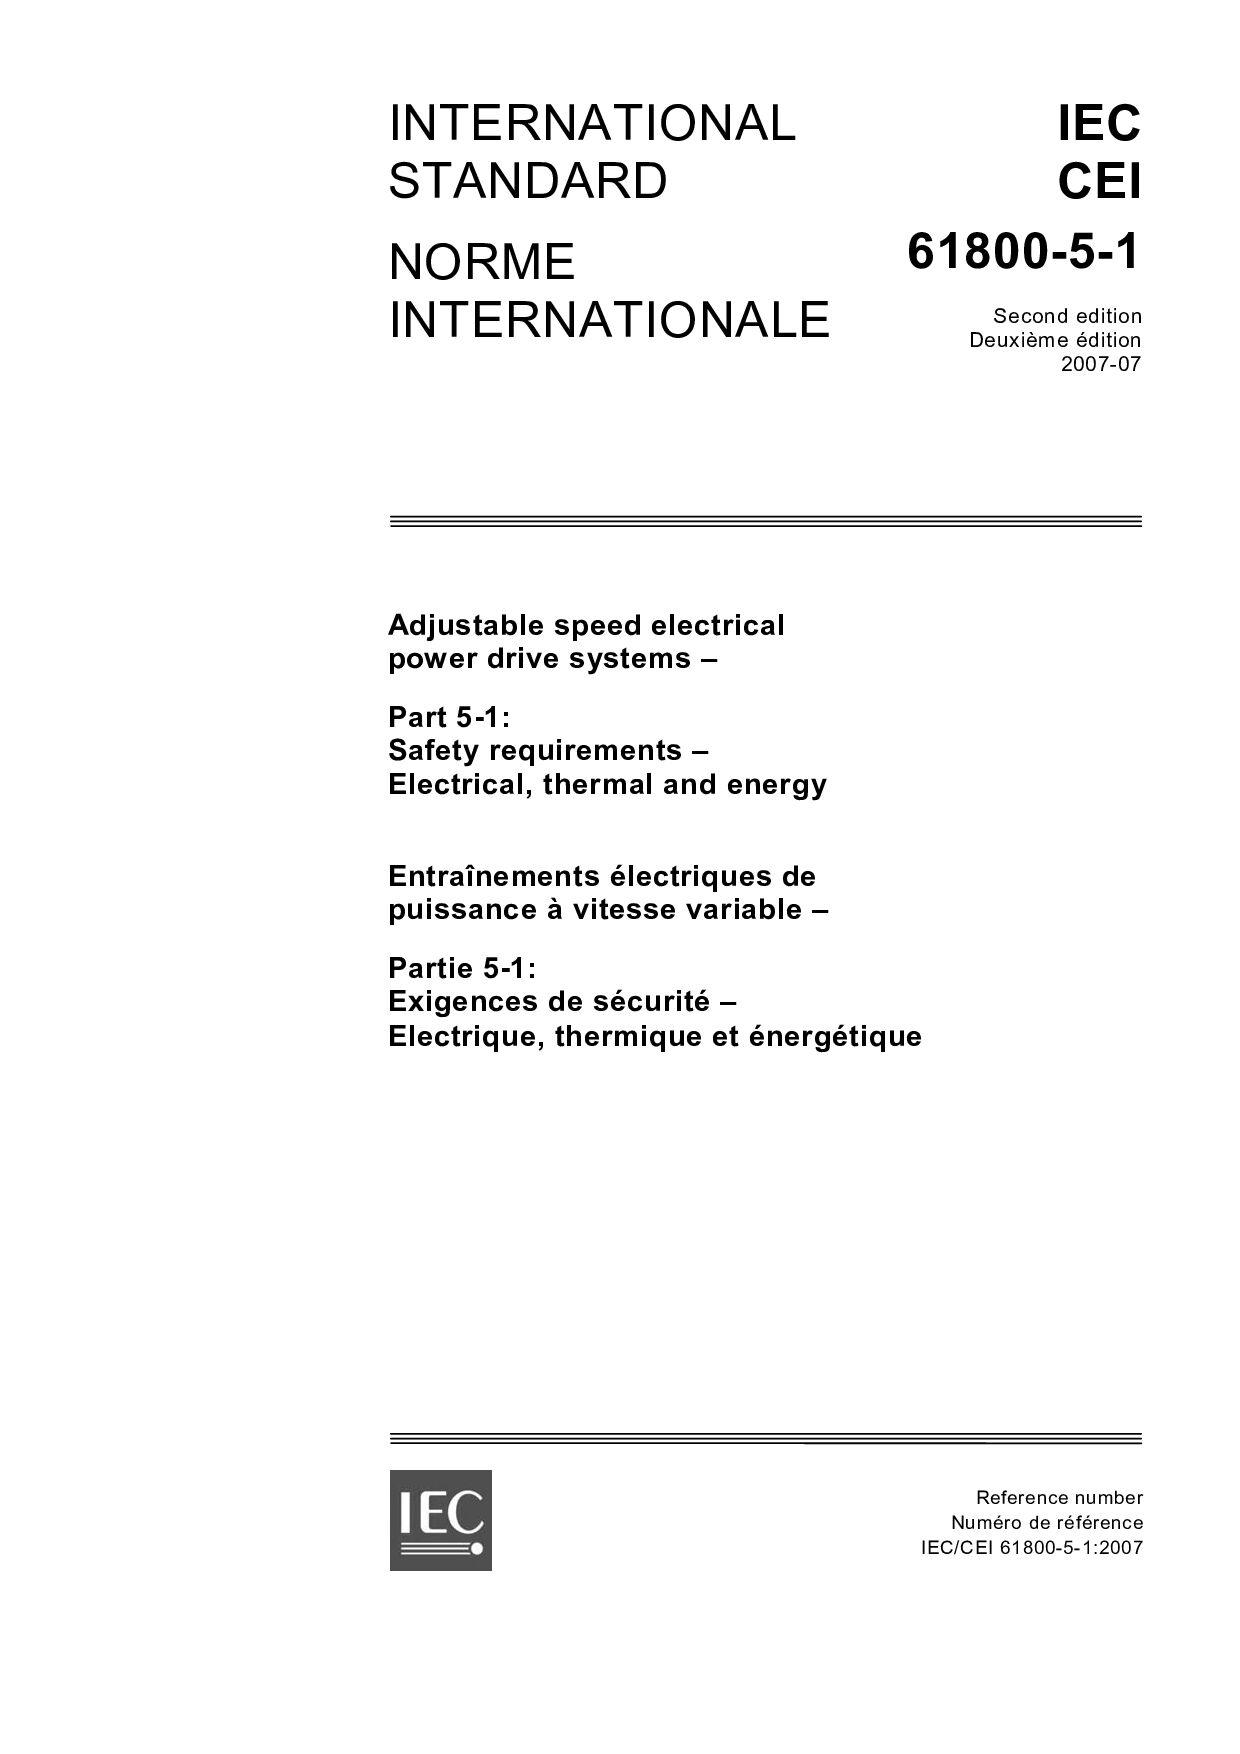 IEC 61800-5-1:2007